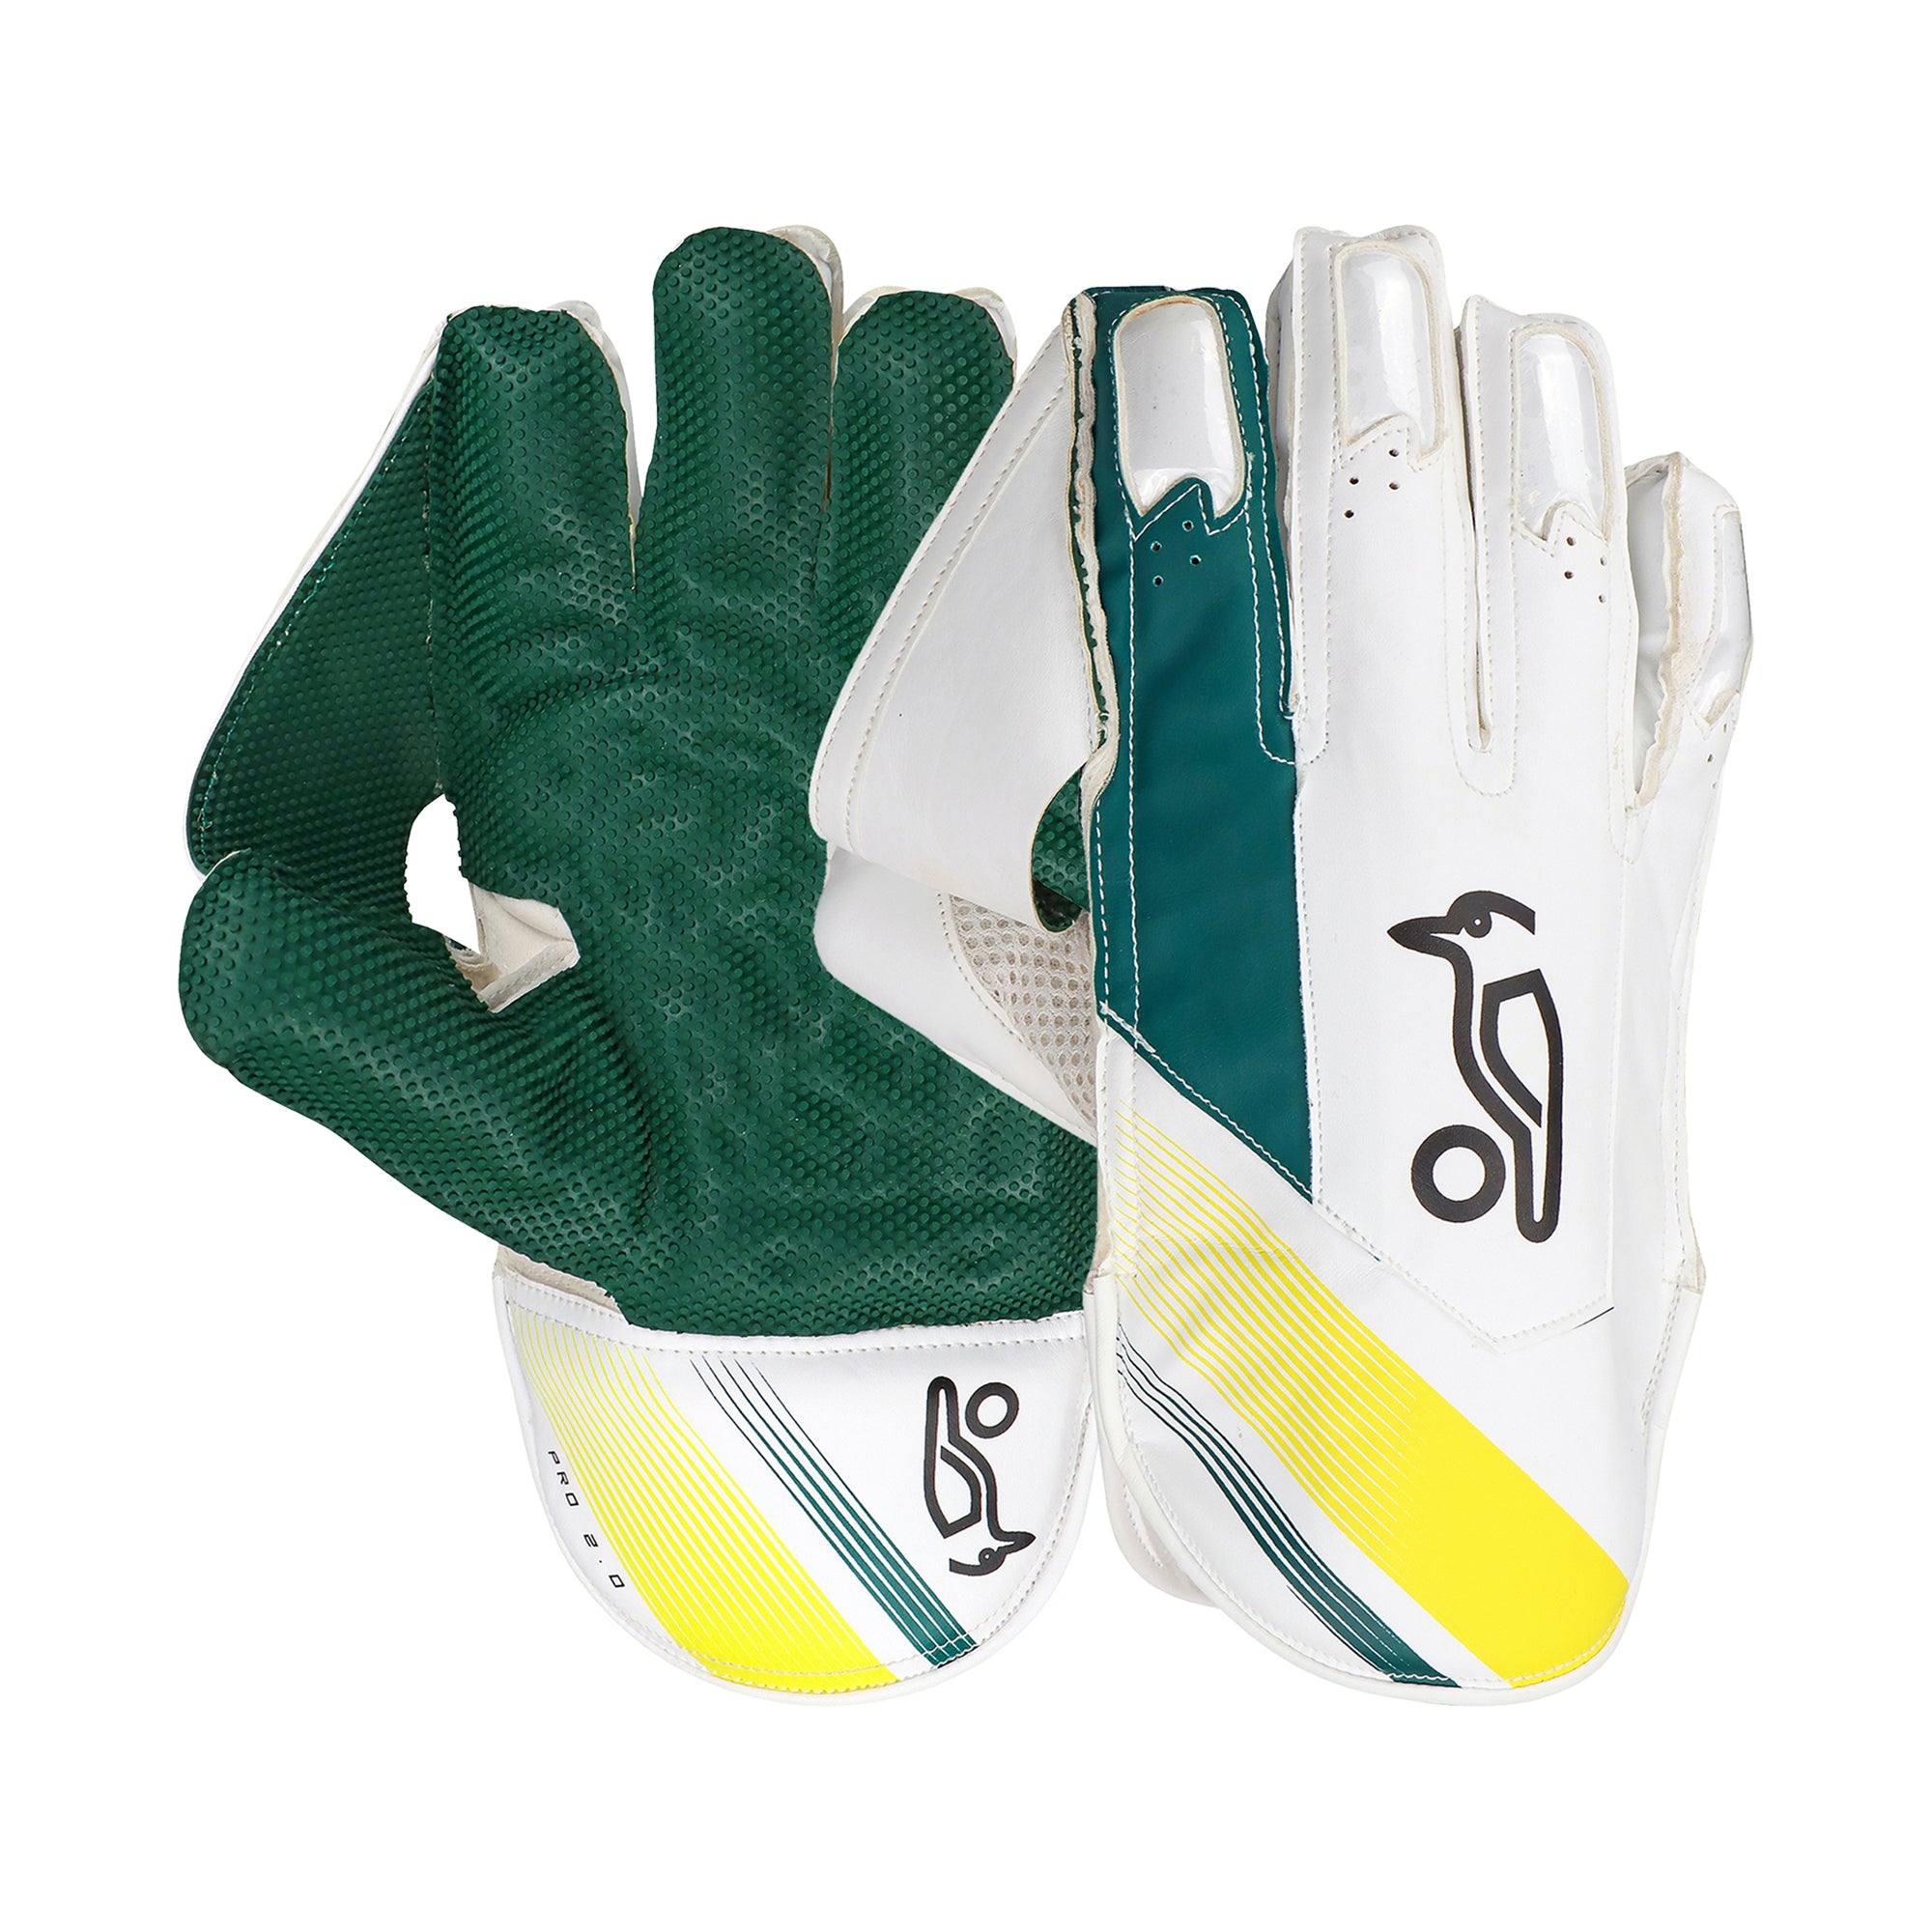 Kookaburra Pro 2.0 WK Gloves